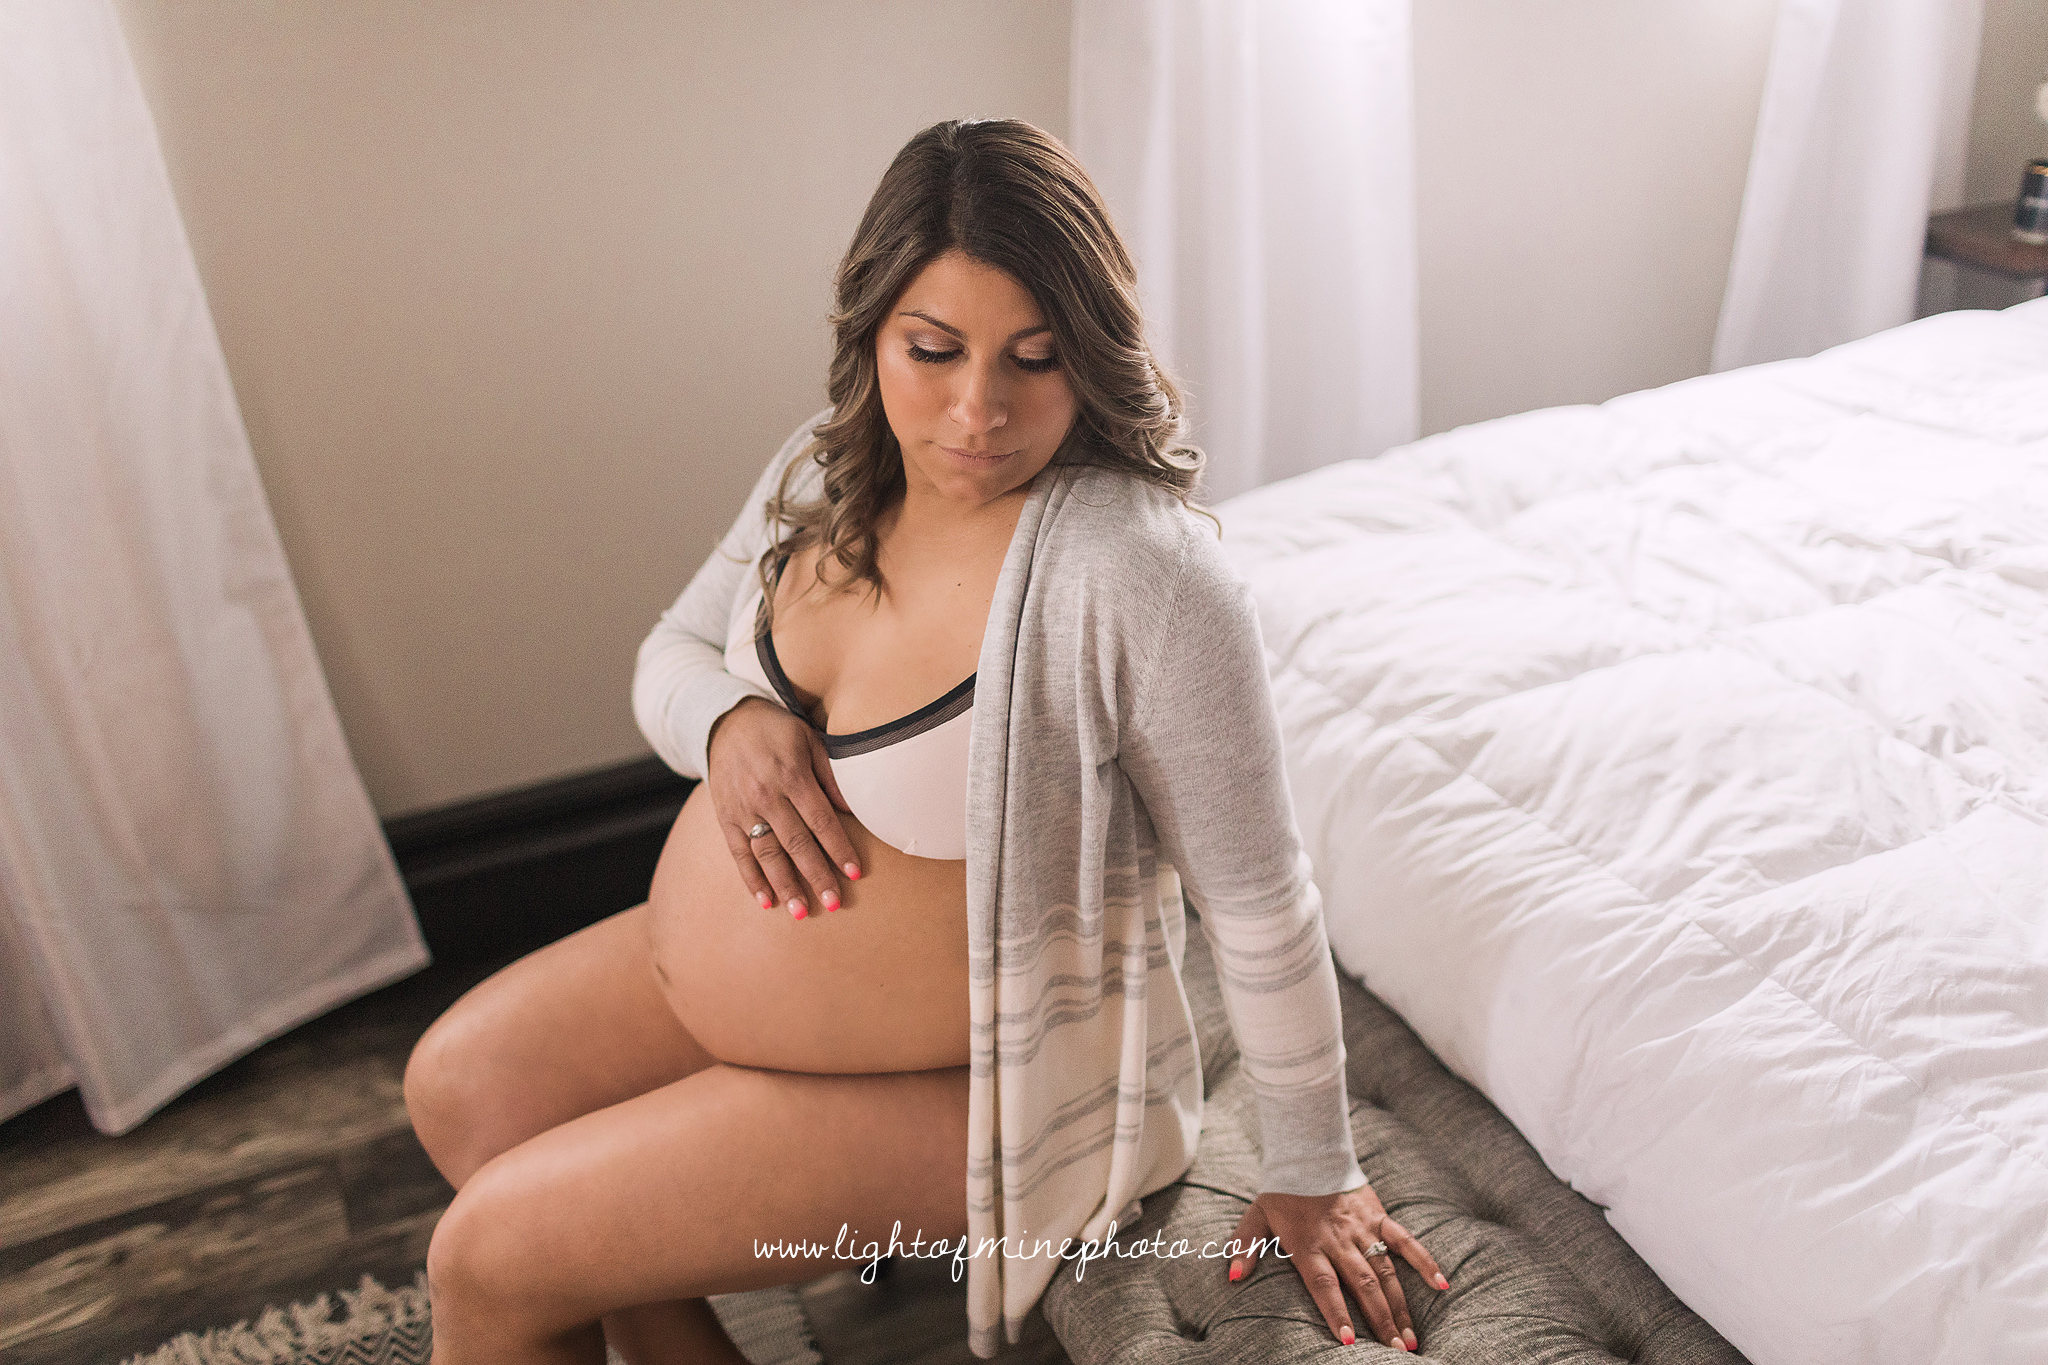 Syracuse NY maternity photographer